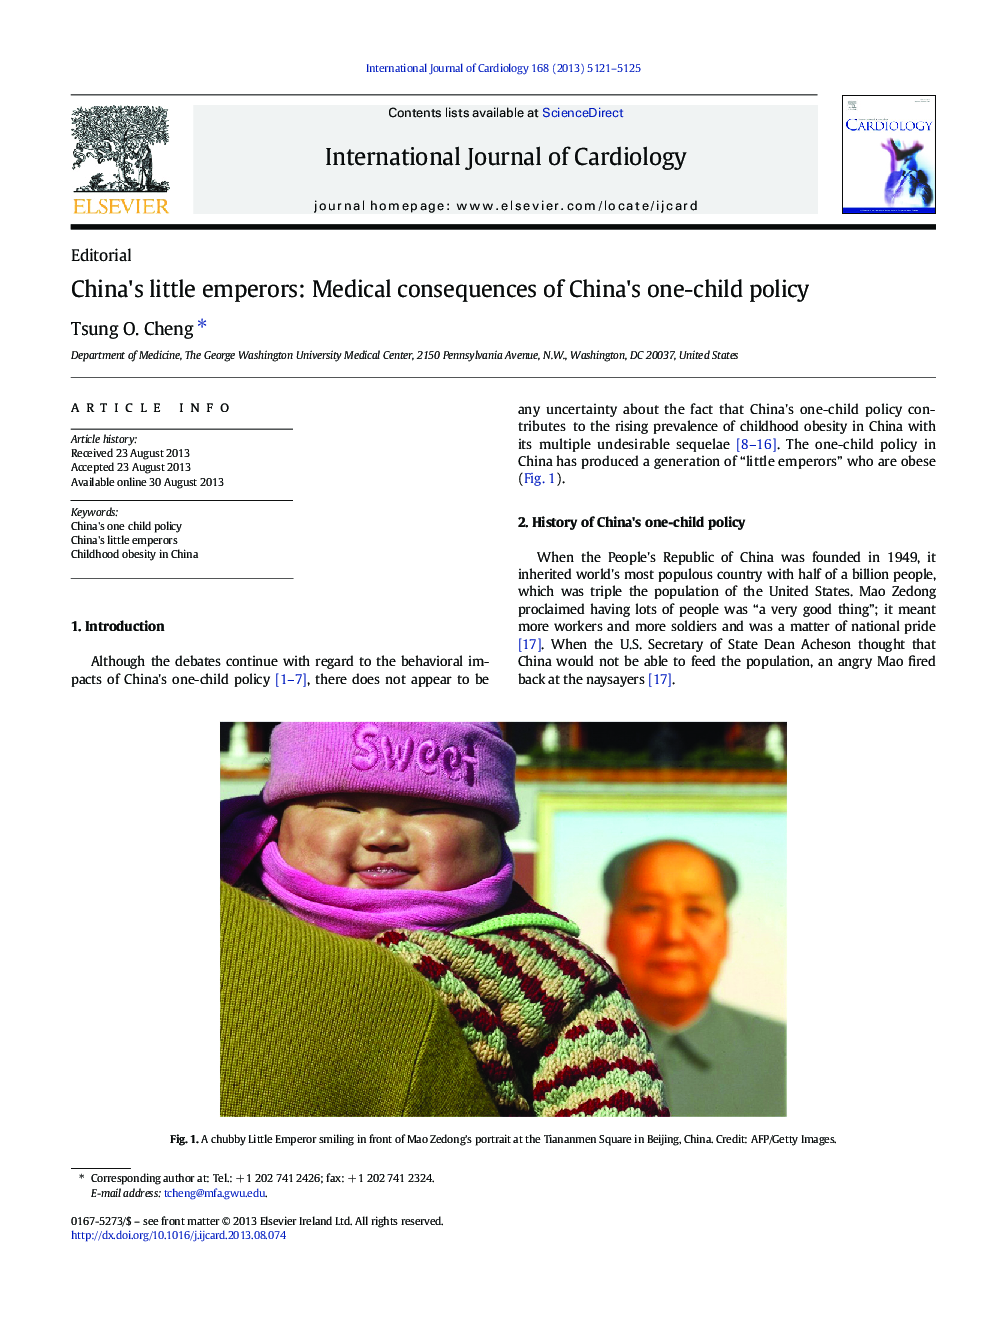 امپراتورهای کوچک چین: پیامدهای پزشکی خطمشی یک کودک در چین است 